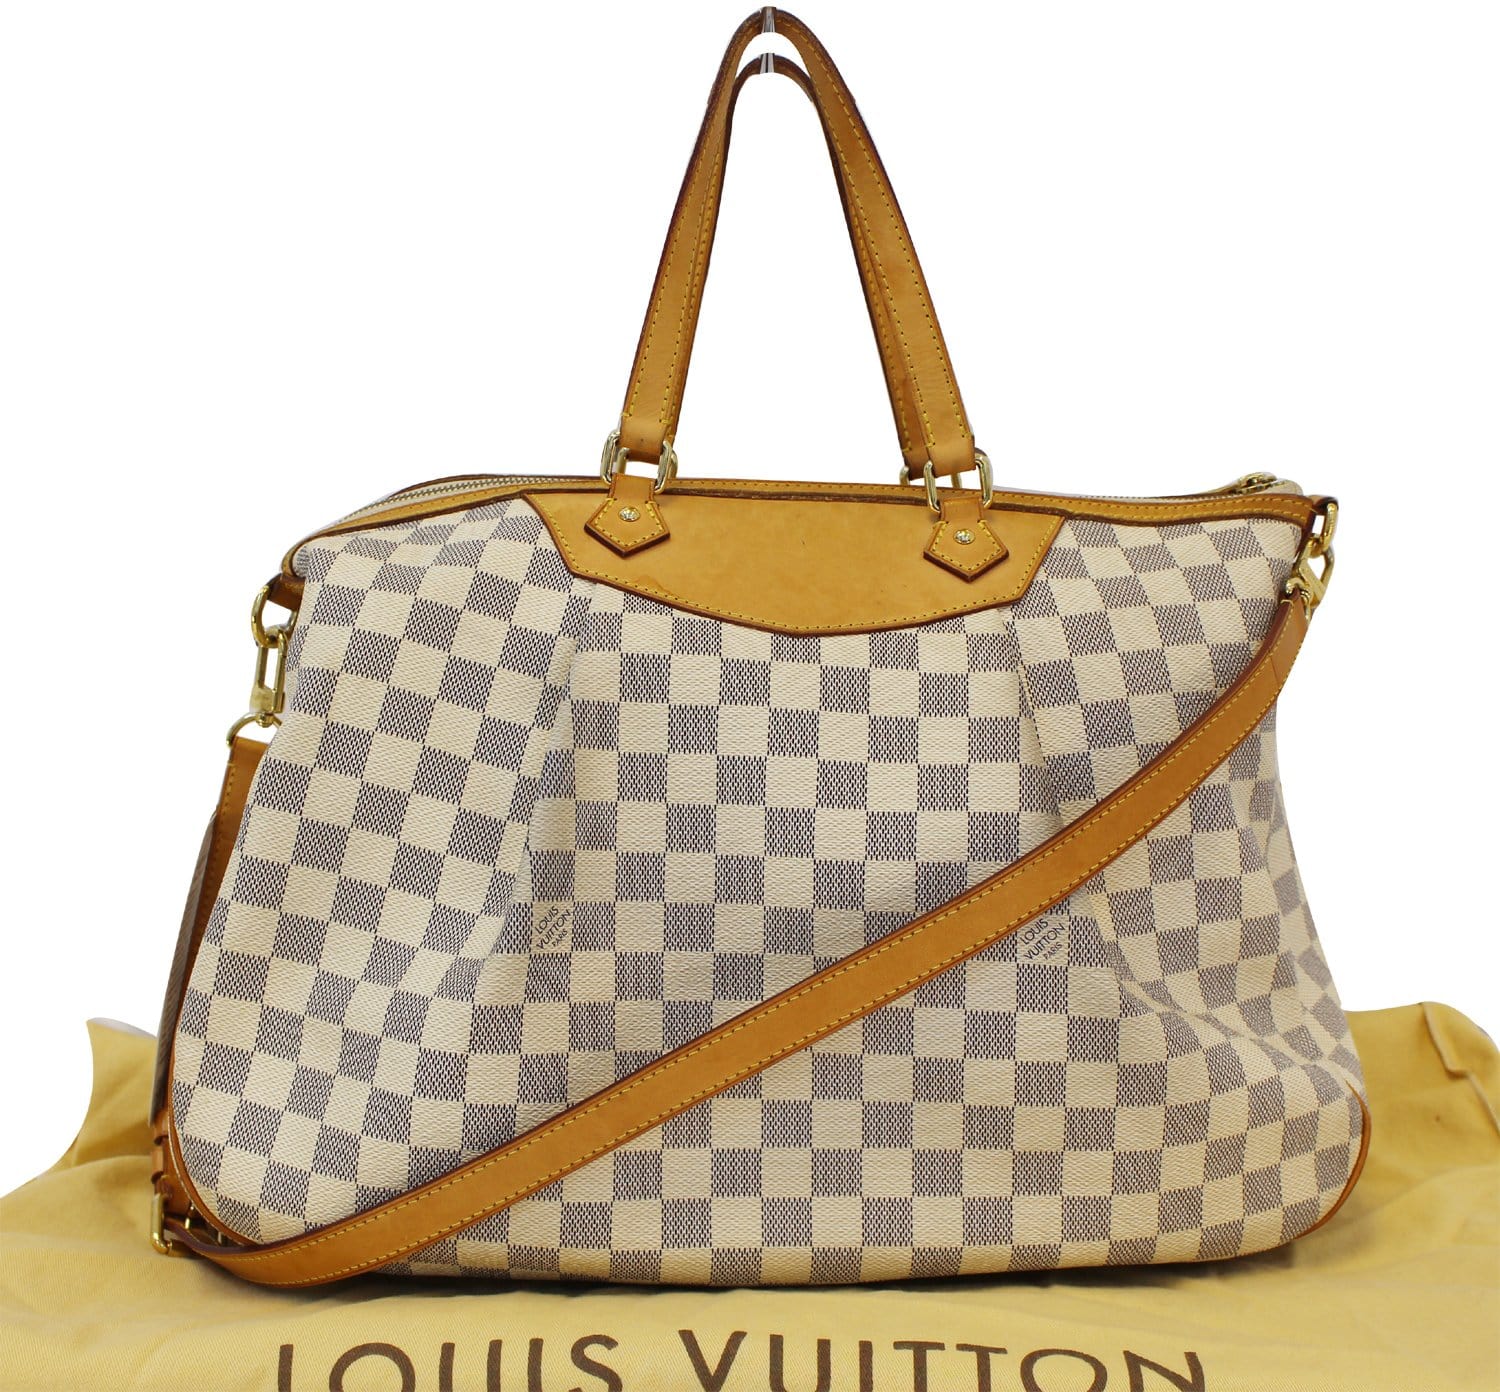 Louis Vuitton Damier Azur Siracusa Gm 73437